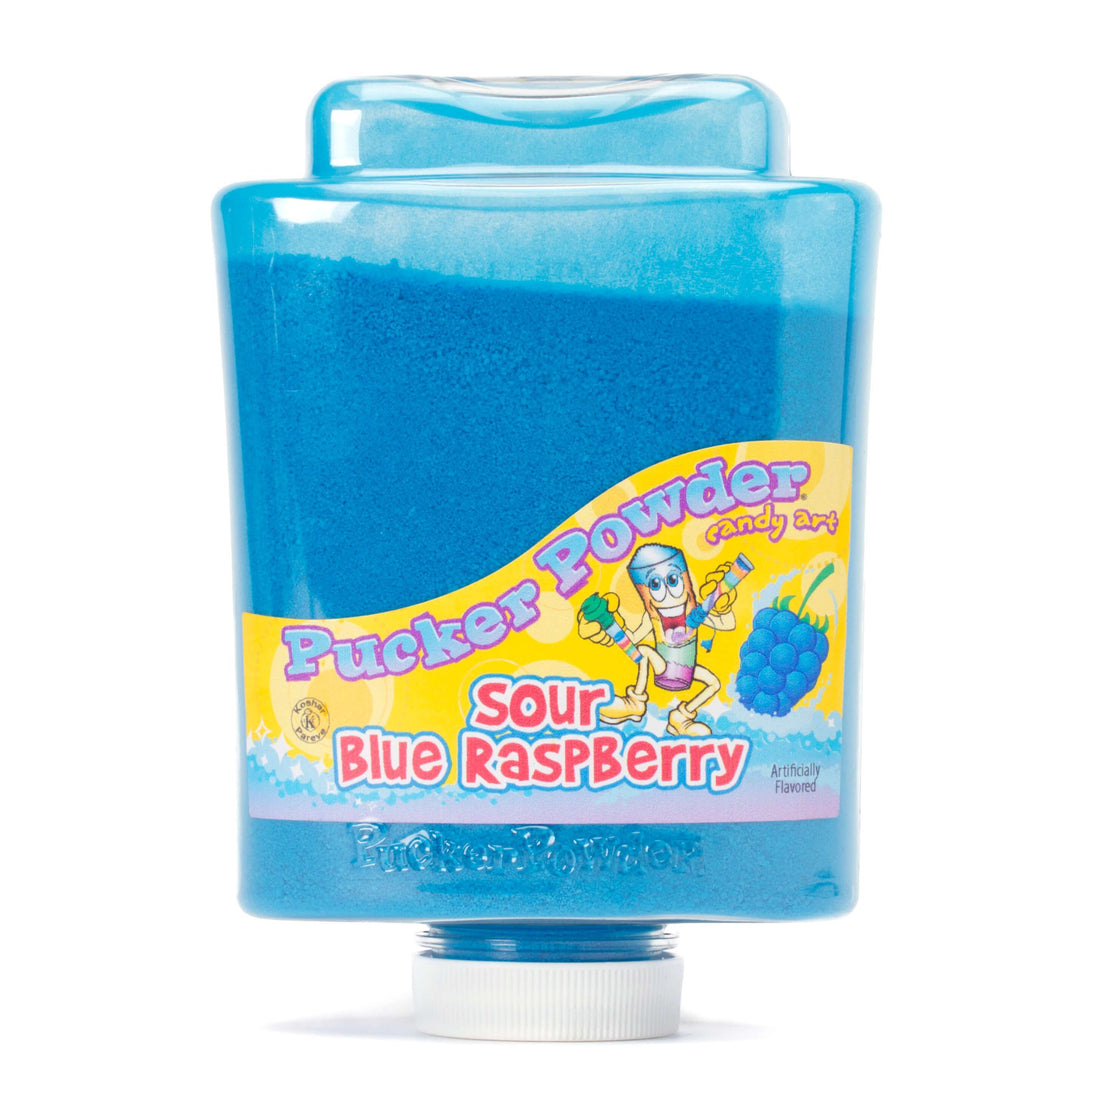 Pucker Powder - Blue Raspberry: 9-Ounce Bottle - Candy Warehouse